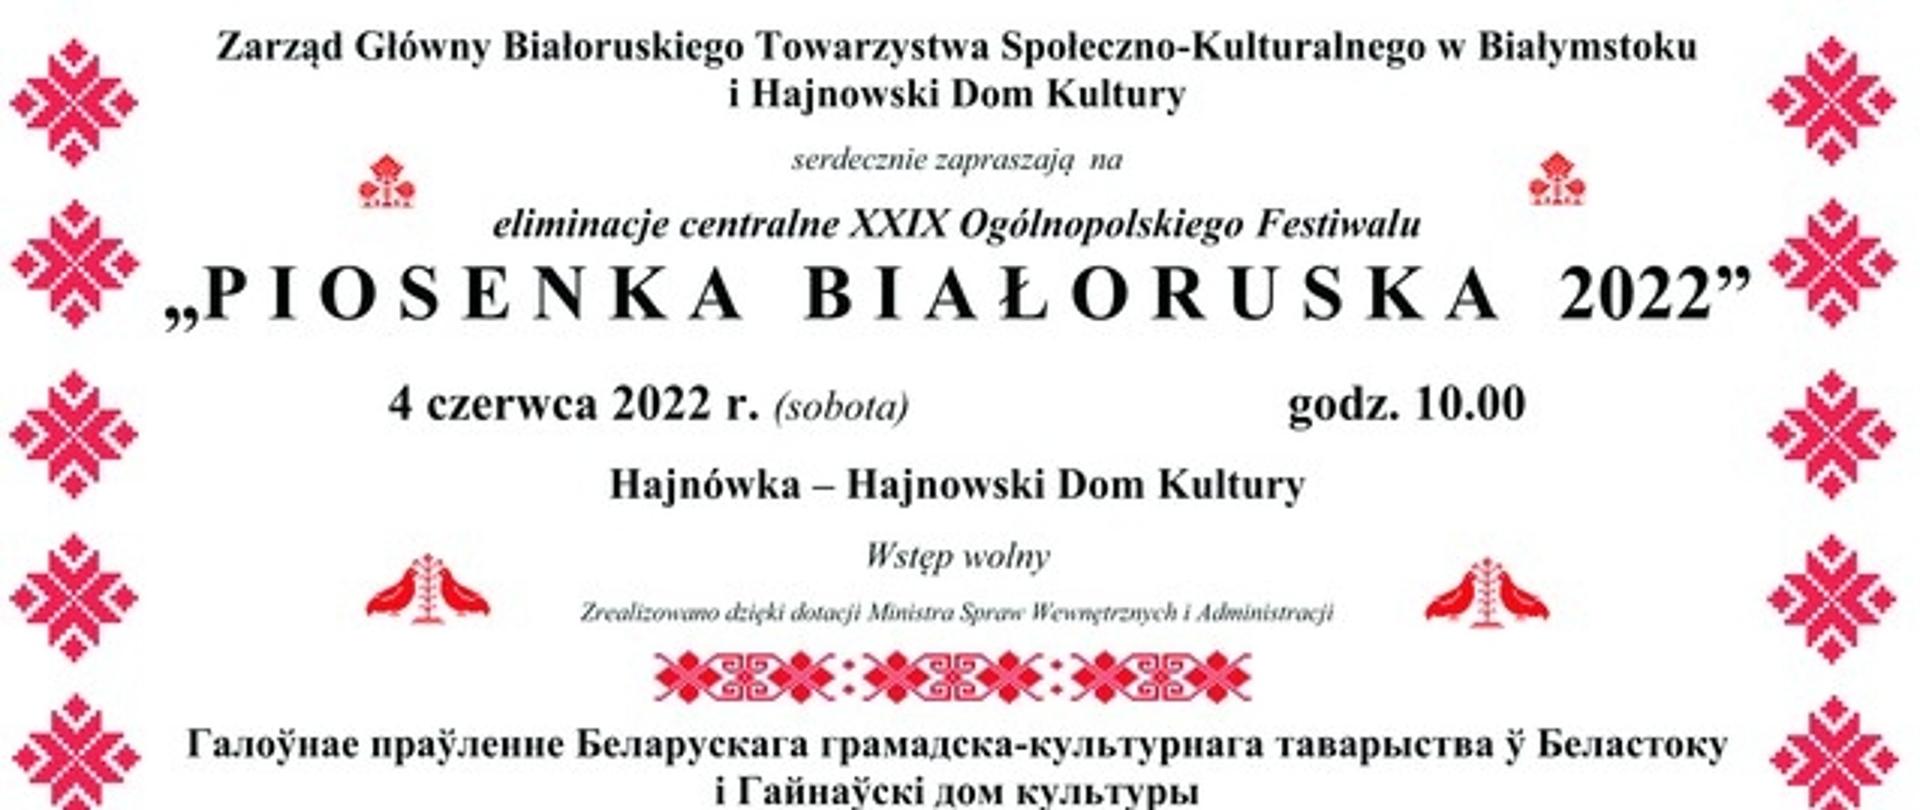 Piosenka białoruska 2022 4 czerwca 2022, godz. 10.00, Hajnowski Dom Kuktury